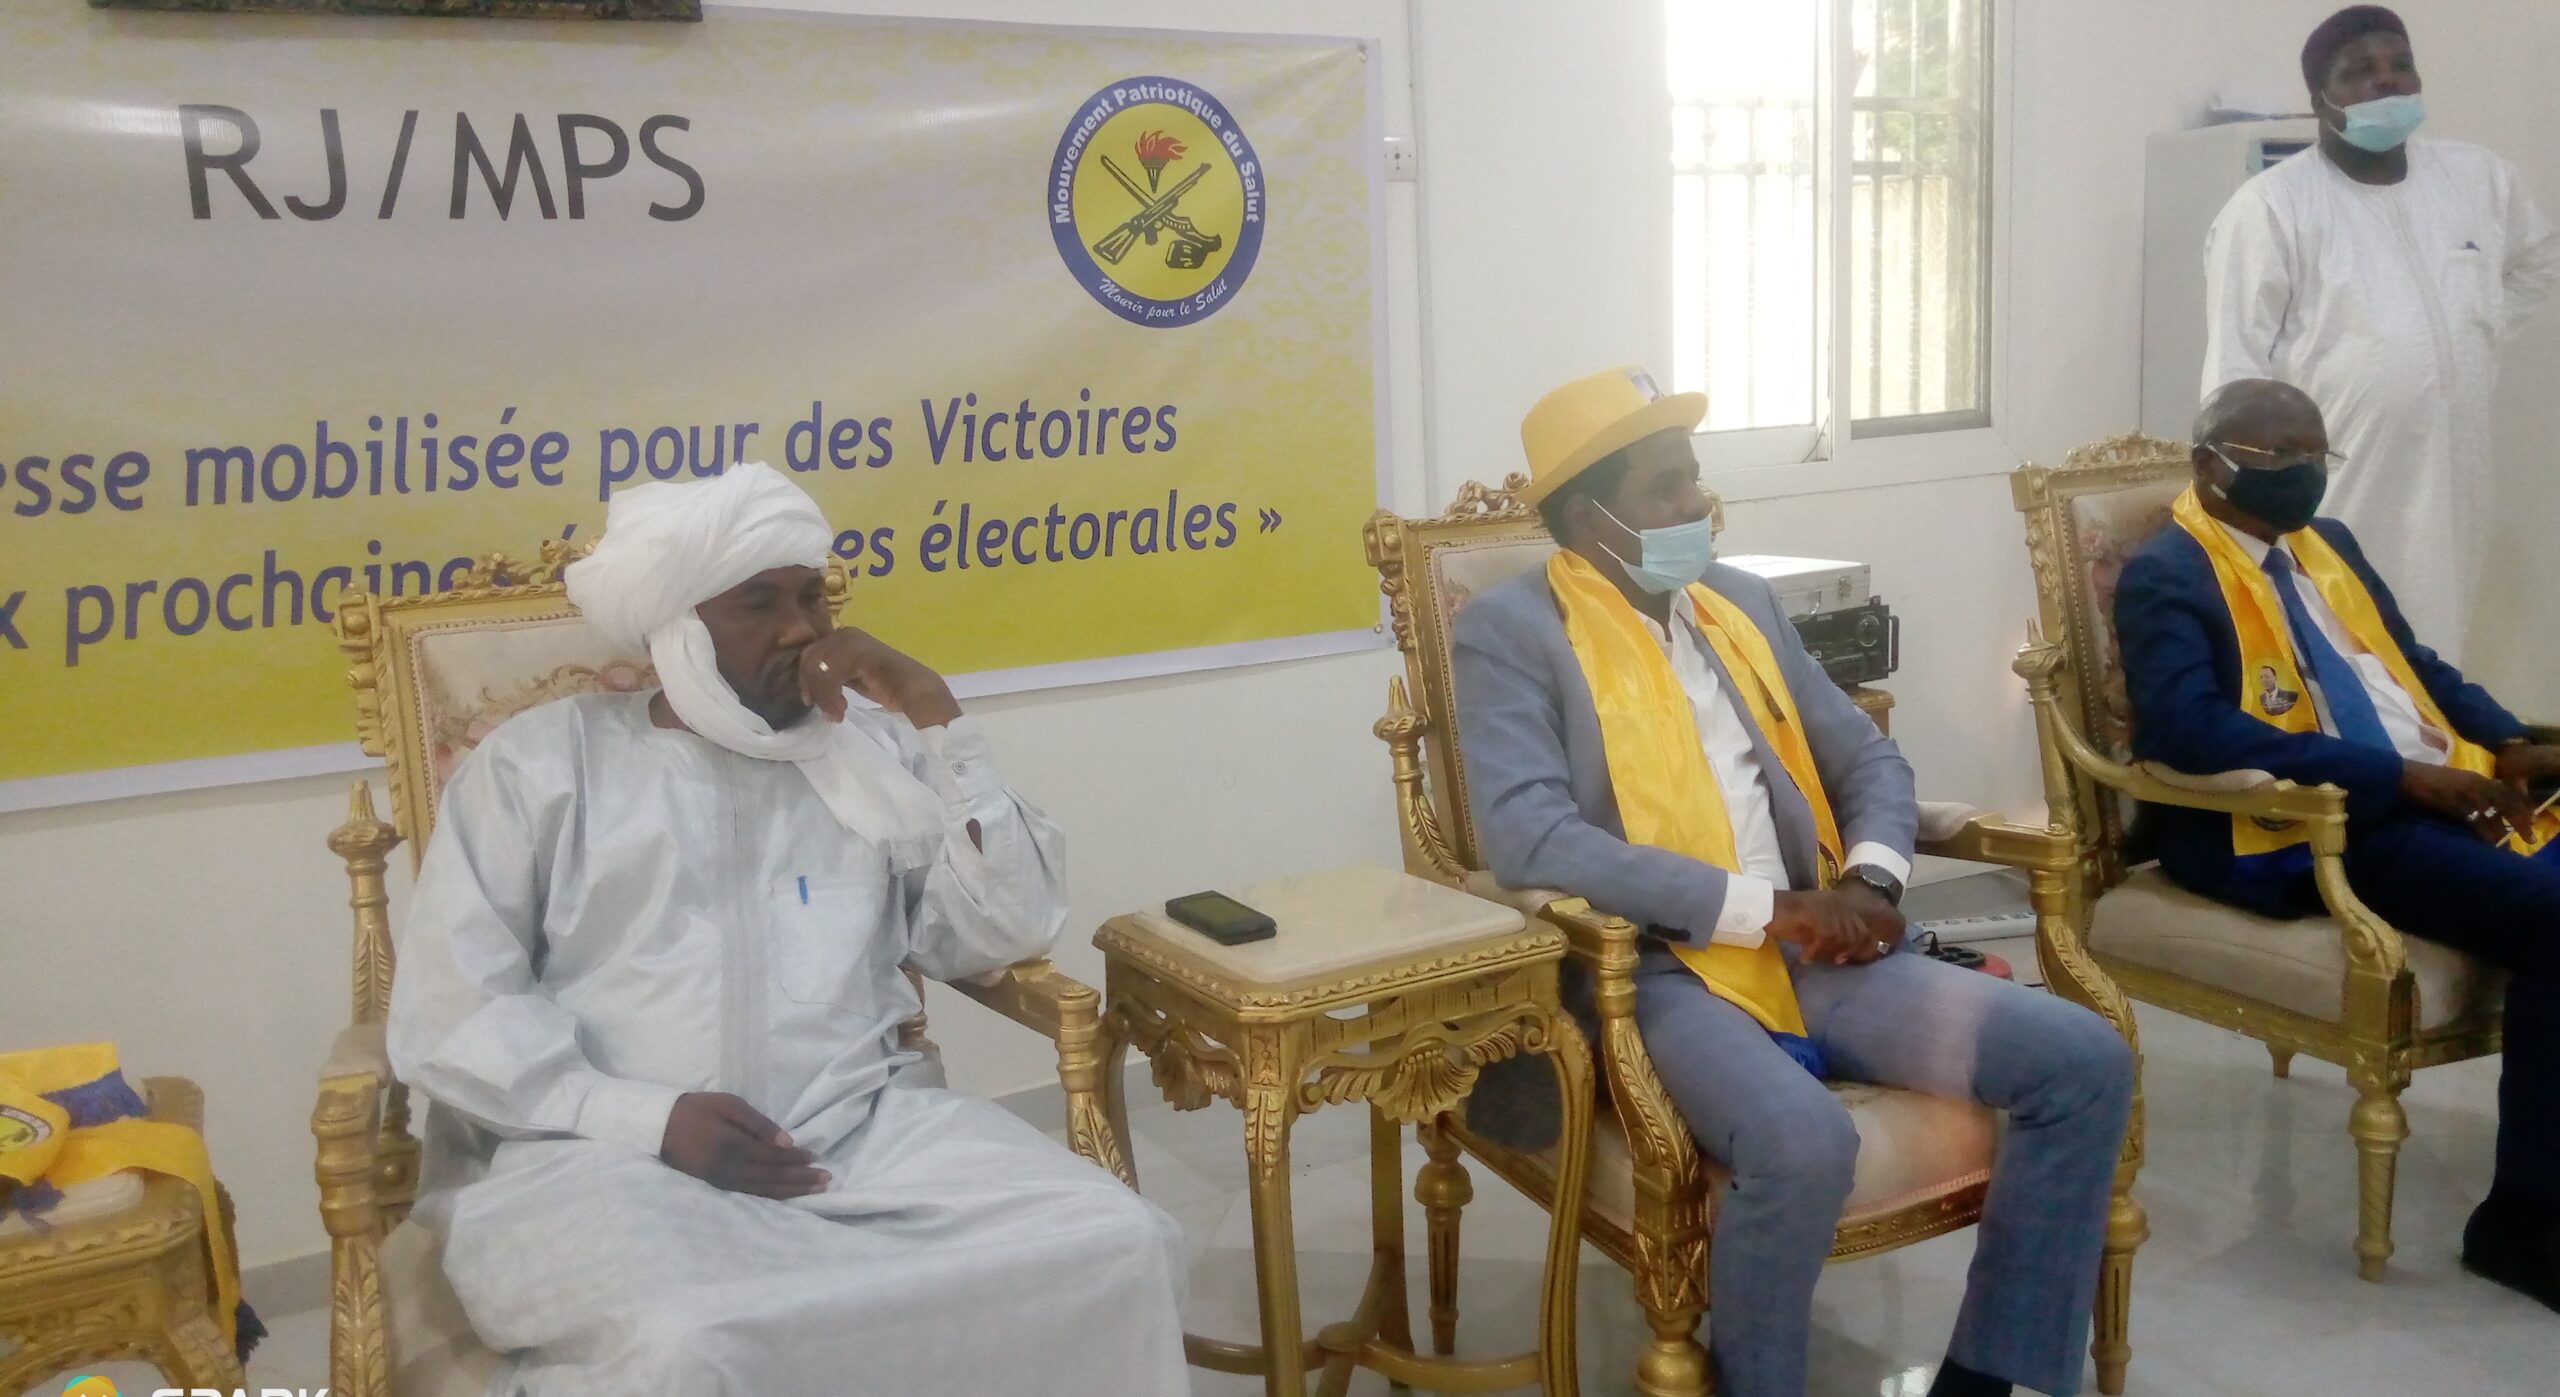 Tchad : Le RJ/MPS installe son bureau pour les prochaines échéances électorales